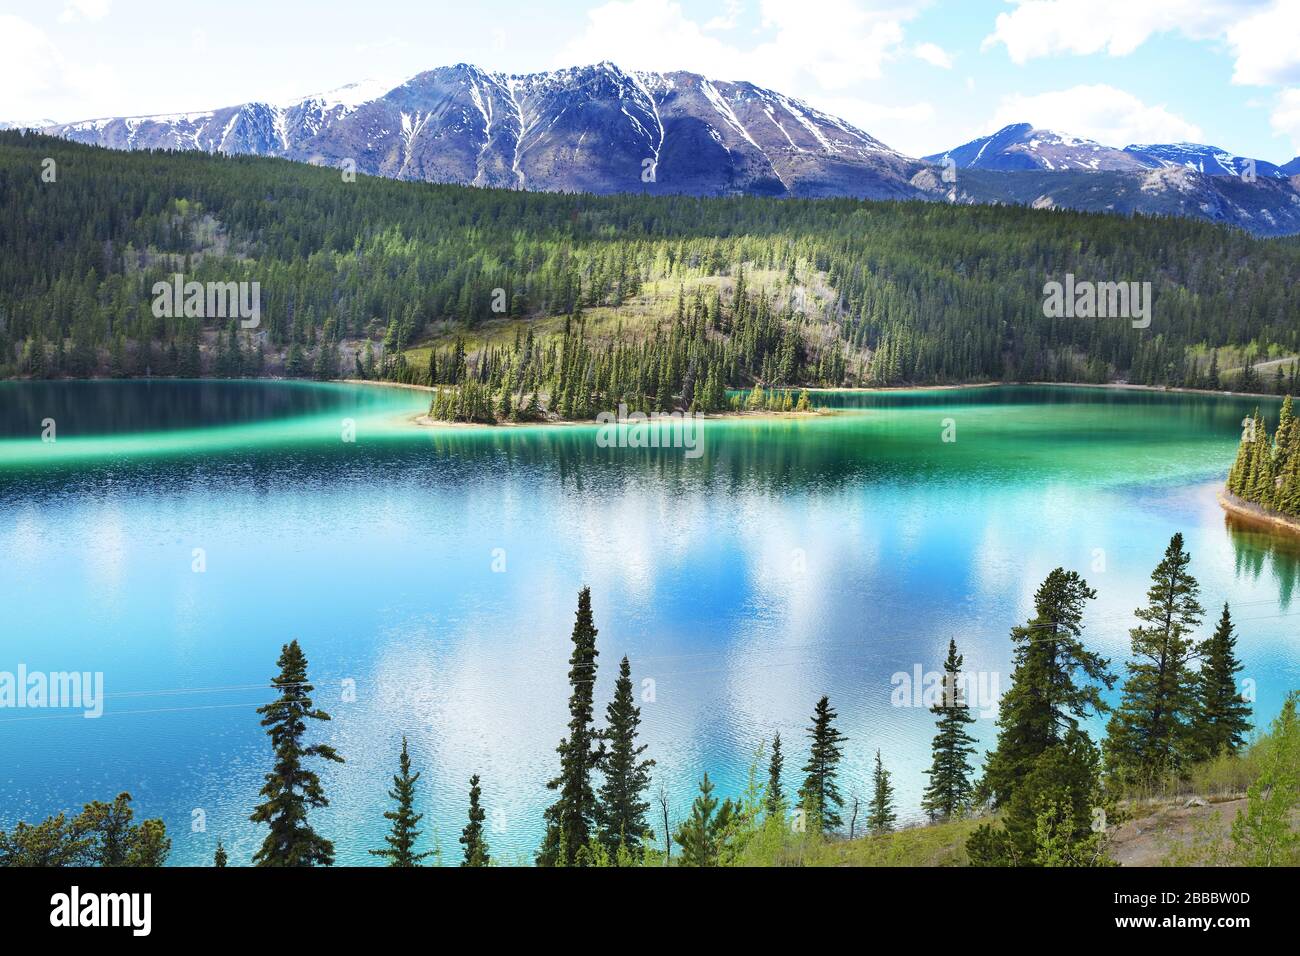 Emerald Lake est ainsi nommé en raison de la coloration verte de son eau qui résulte d'un mélange d'argile et de carbonate de calcium sur le fond peu profond. 12 km au nord de Carcross, territoire du Yukon, Canada Banque D'Images